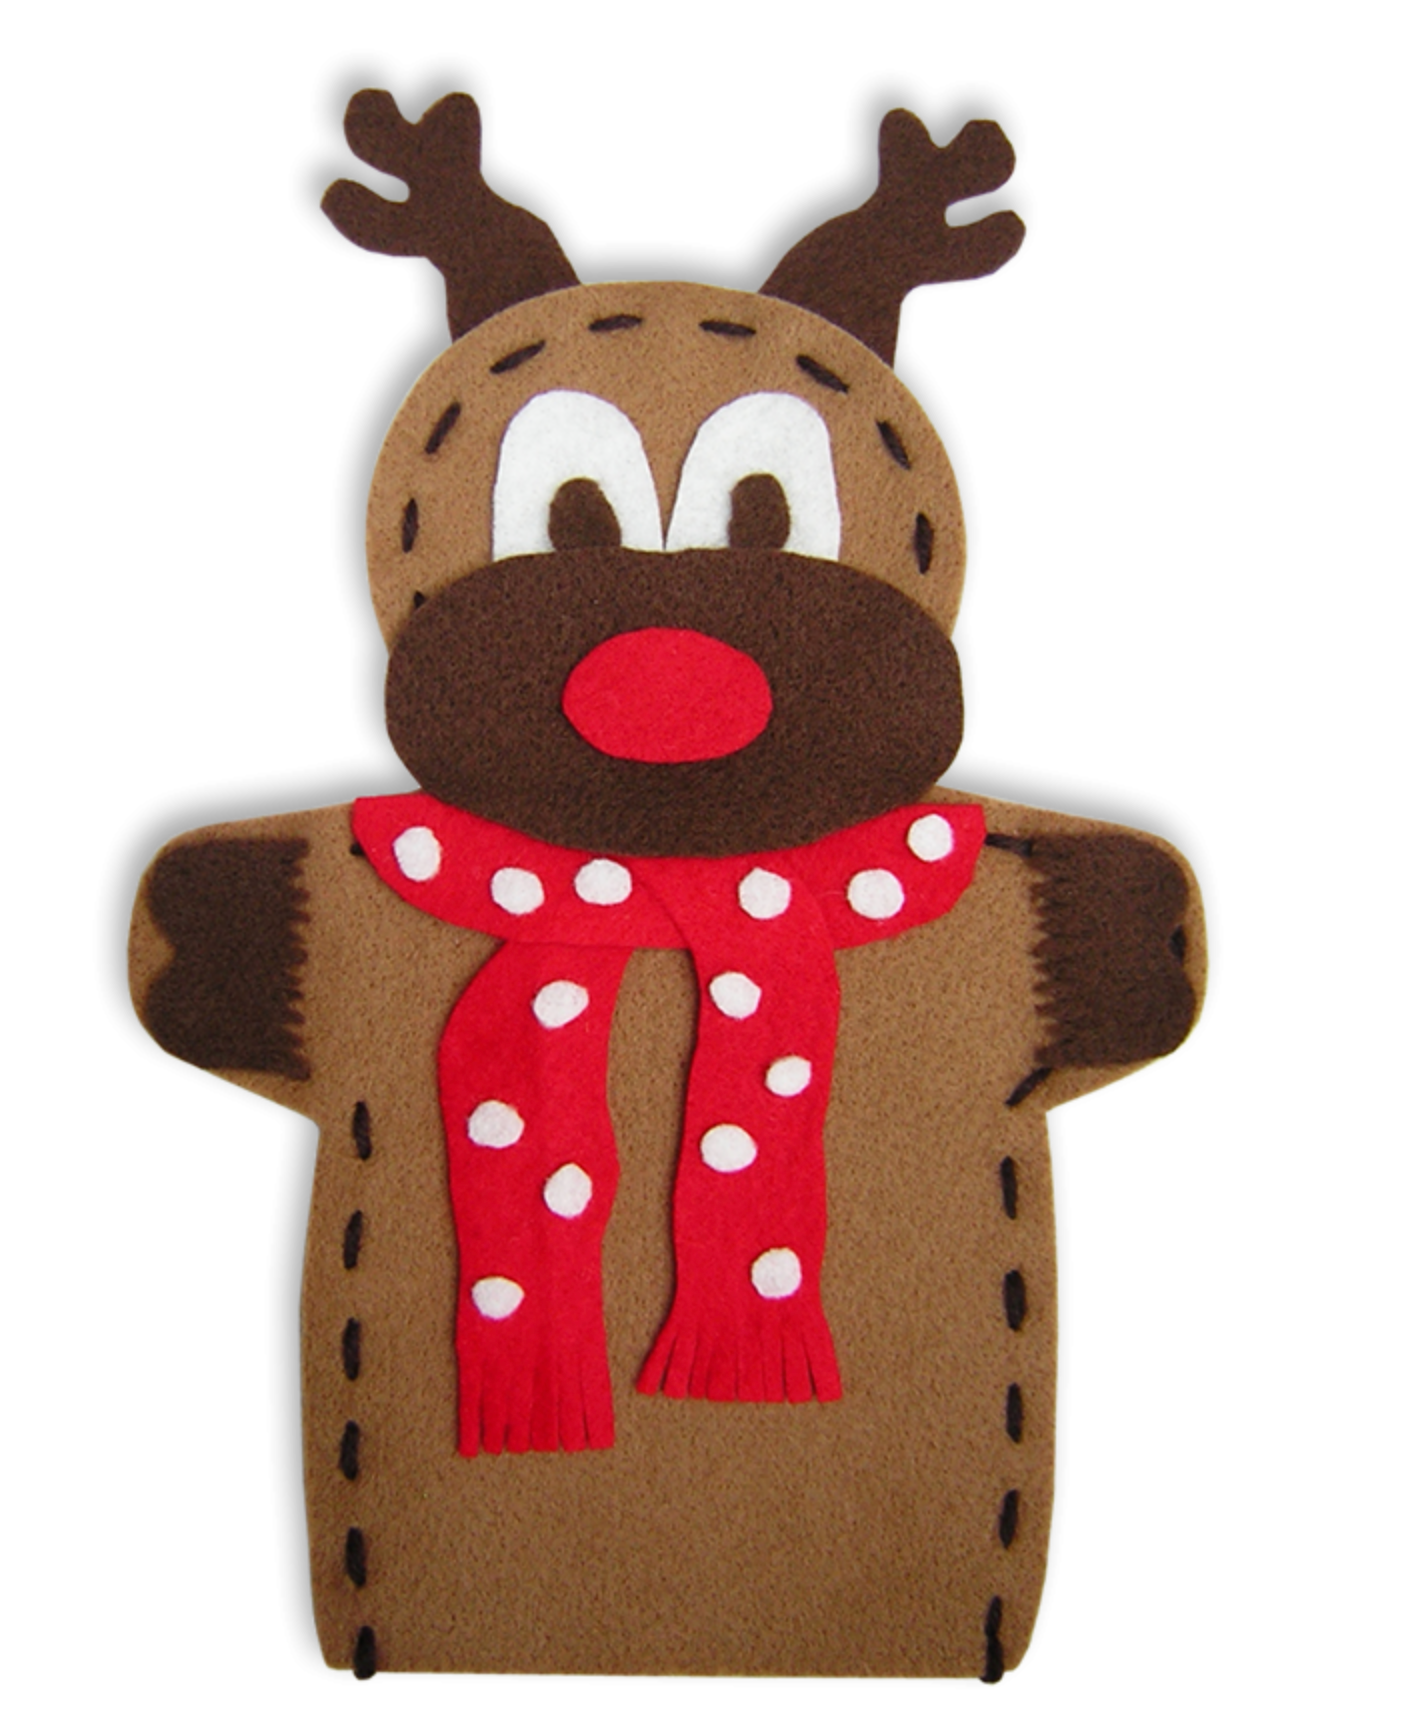 Reindeer / Gingerbread Man Puppet Pack Felt Craft Kit - Makes 30